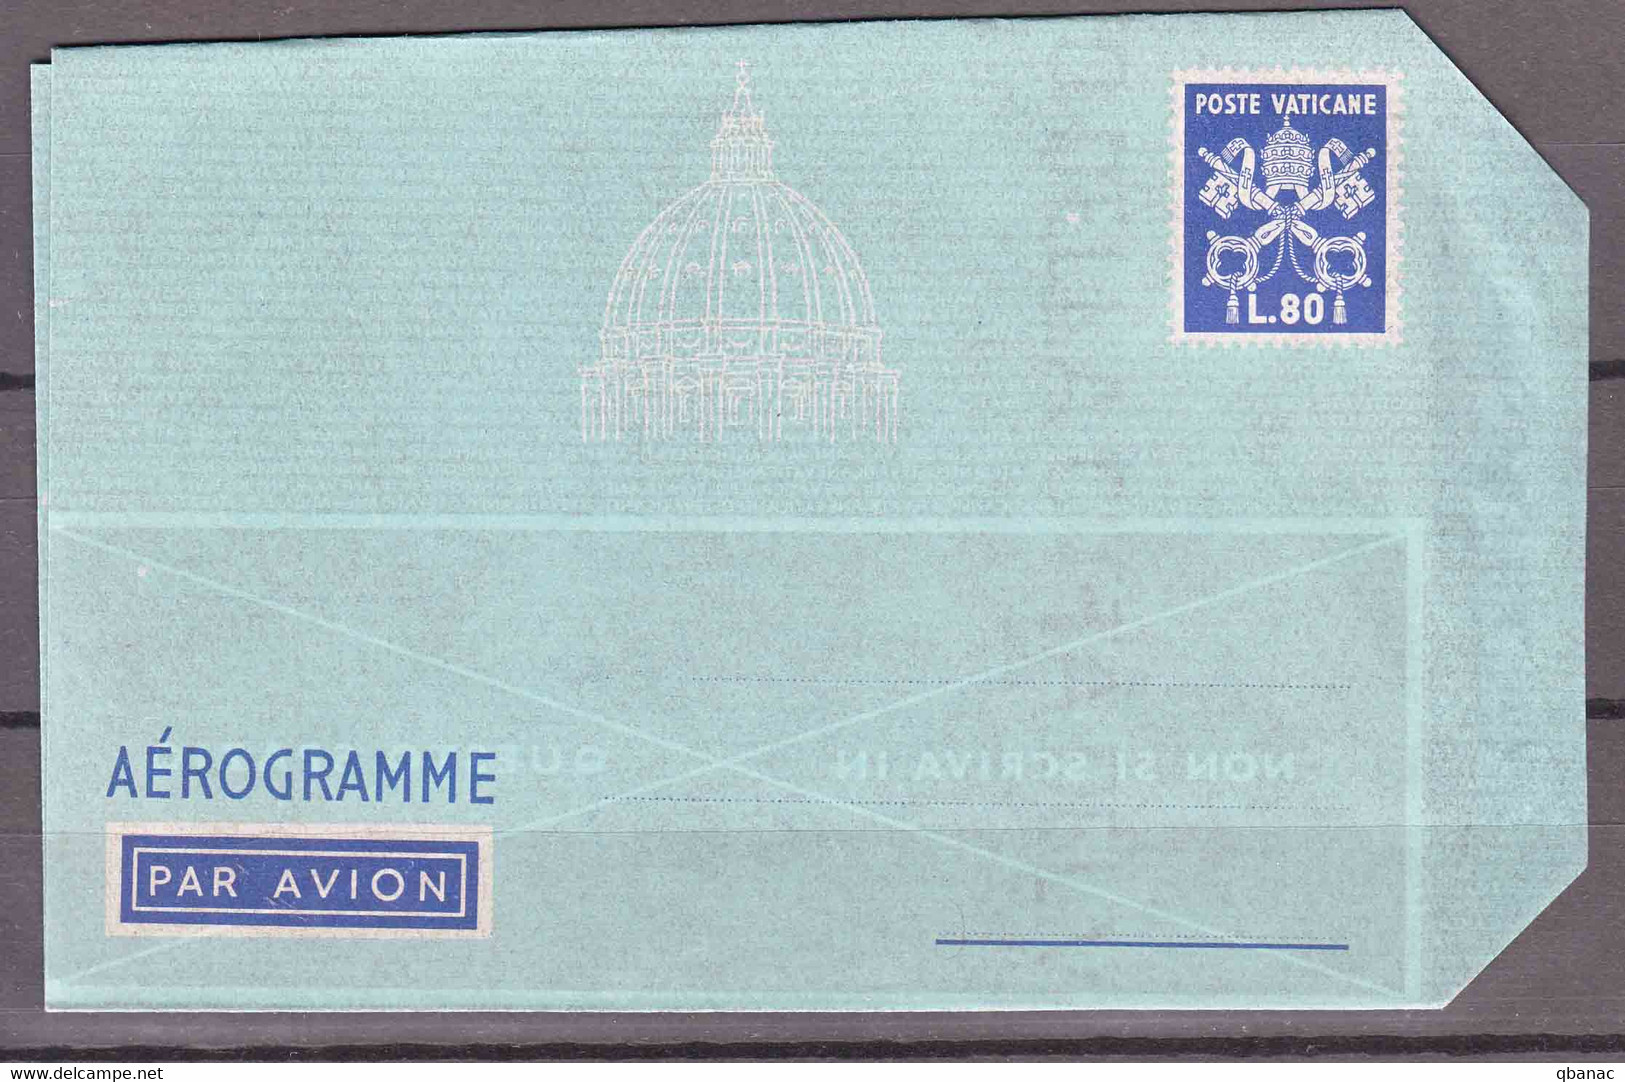 Vatican Aerogramme, Aerogramma 80 Lire Scott#LF6 Watermark Variety, Value 200 Eur - Ganzsachen